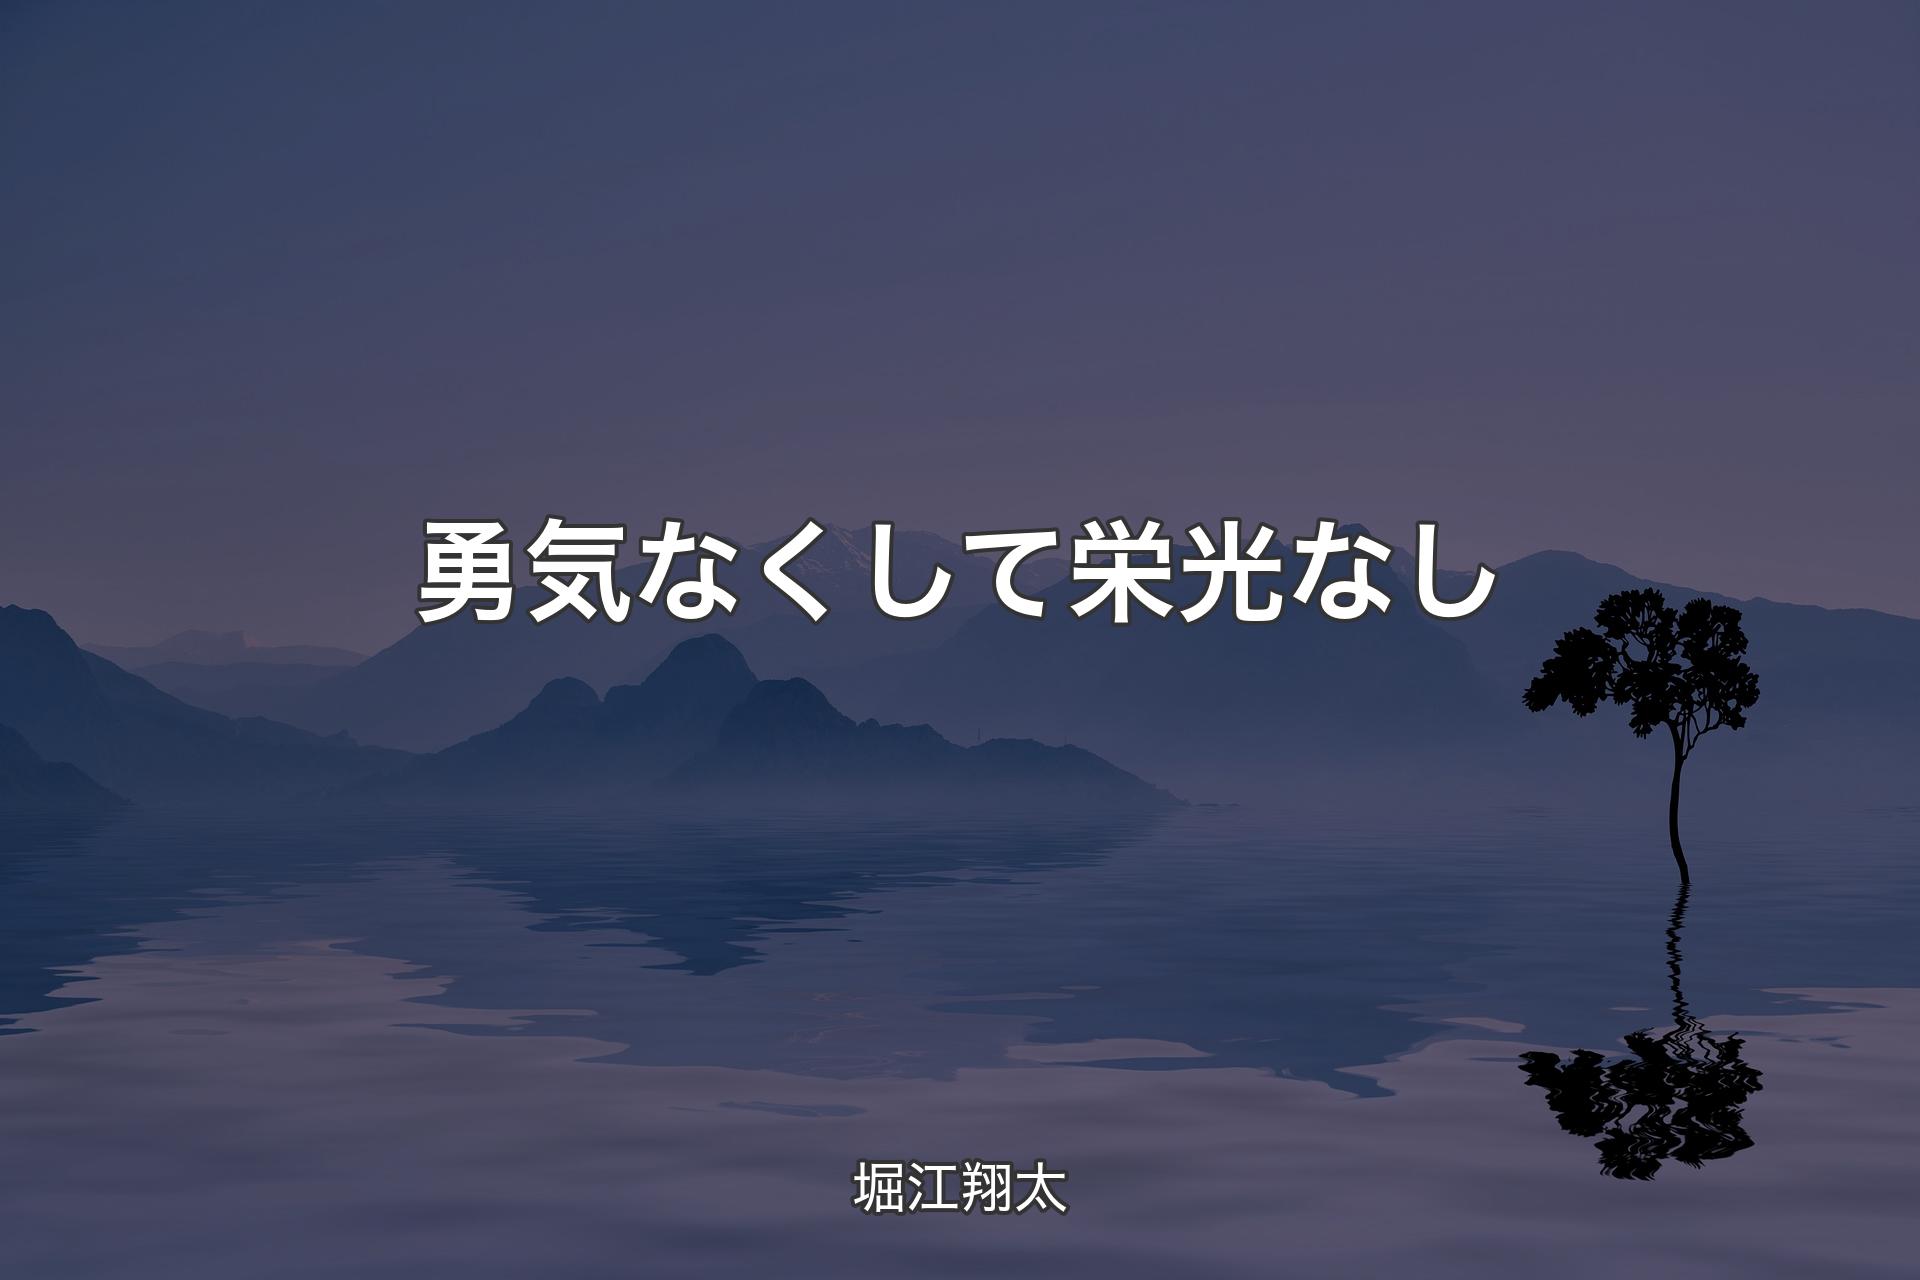 【背景4】勇気なくして栄光なし - 堀江翔太